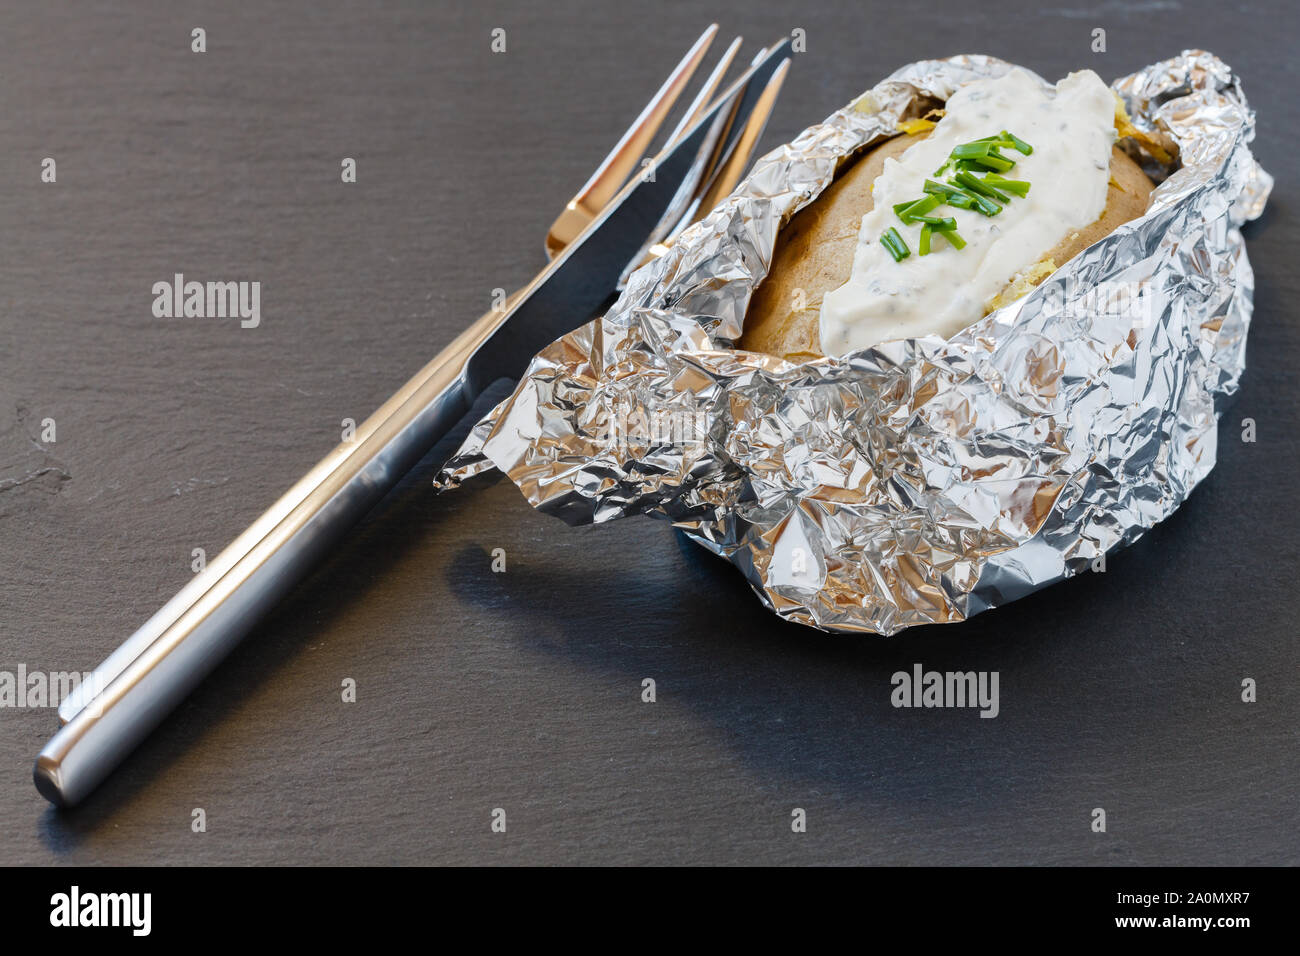 Ofen gebackene Kartoffeln in Alufolie mit Kräuter Frischkäse auf schiefer  Board Stockfotografie - Alamy